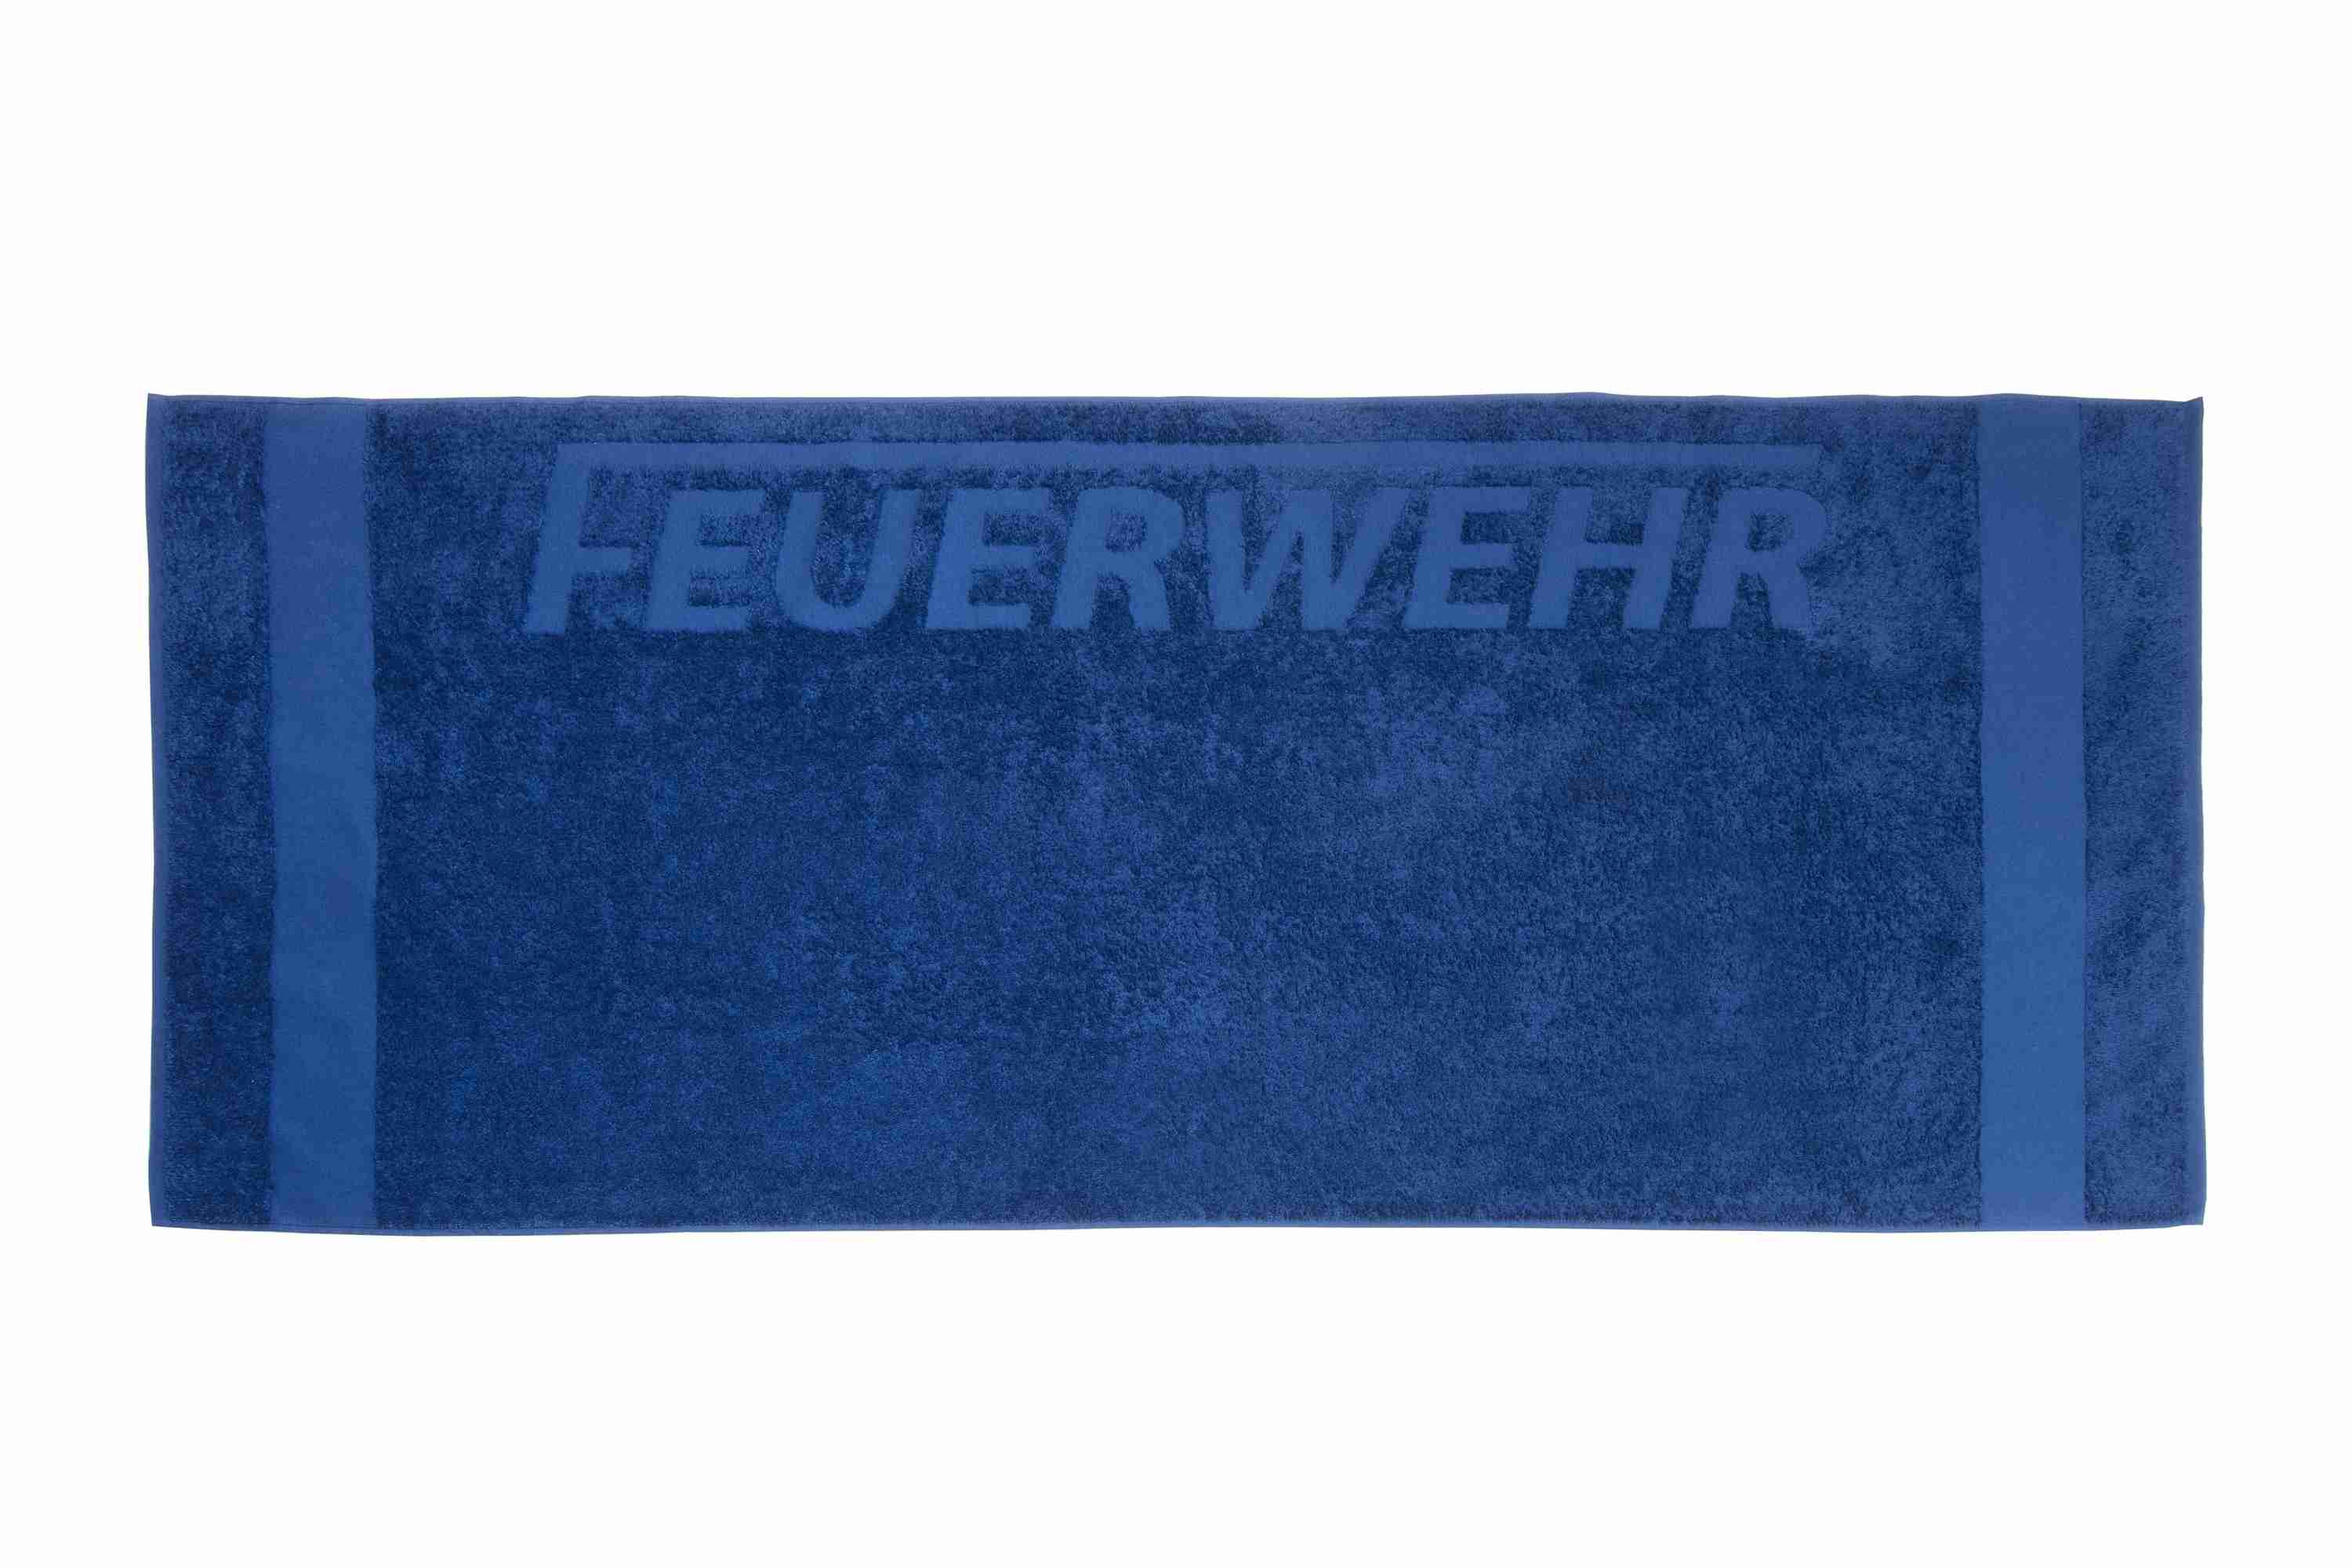 Premium Duschtuch mit FEUERWEHR Einwebung marineblau 140x70cm 100% Baumwolle, sehr flauschig, deutsche Markenqualität